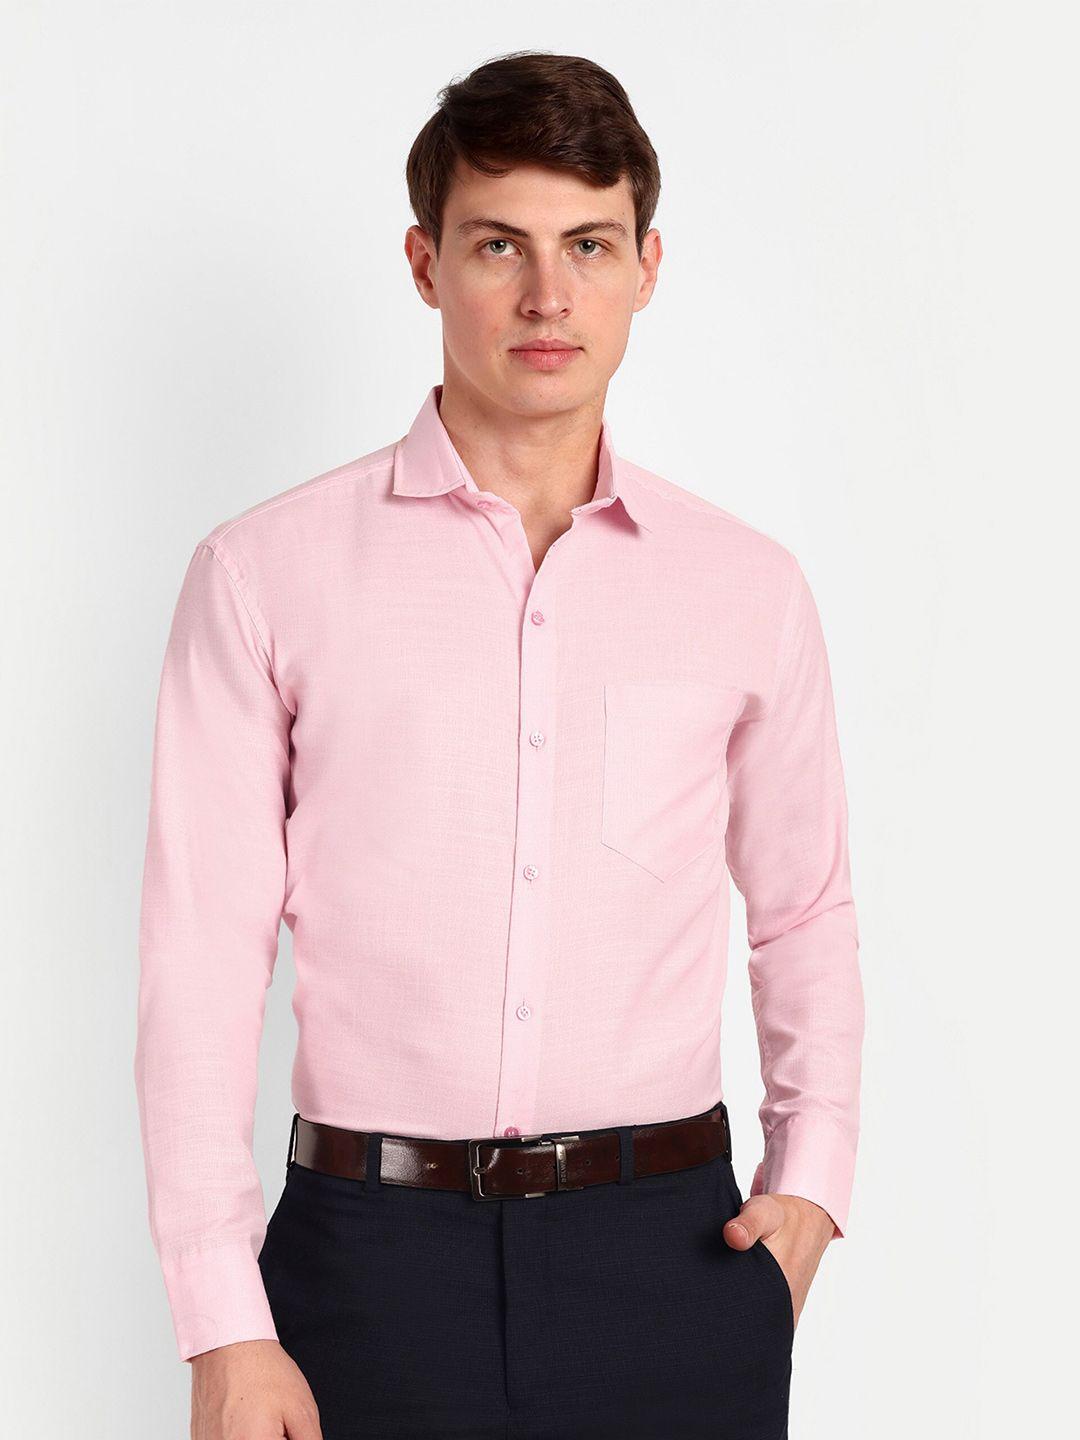 colorwings men pink comfort semi sheer formal shirt